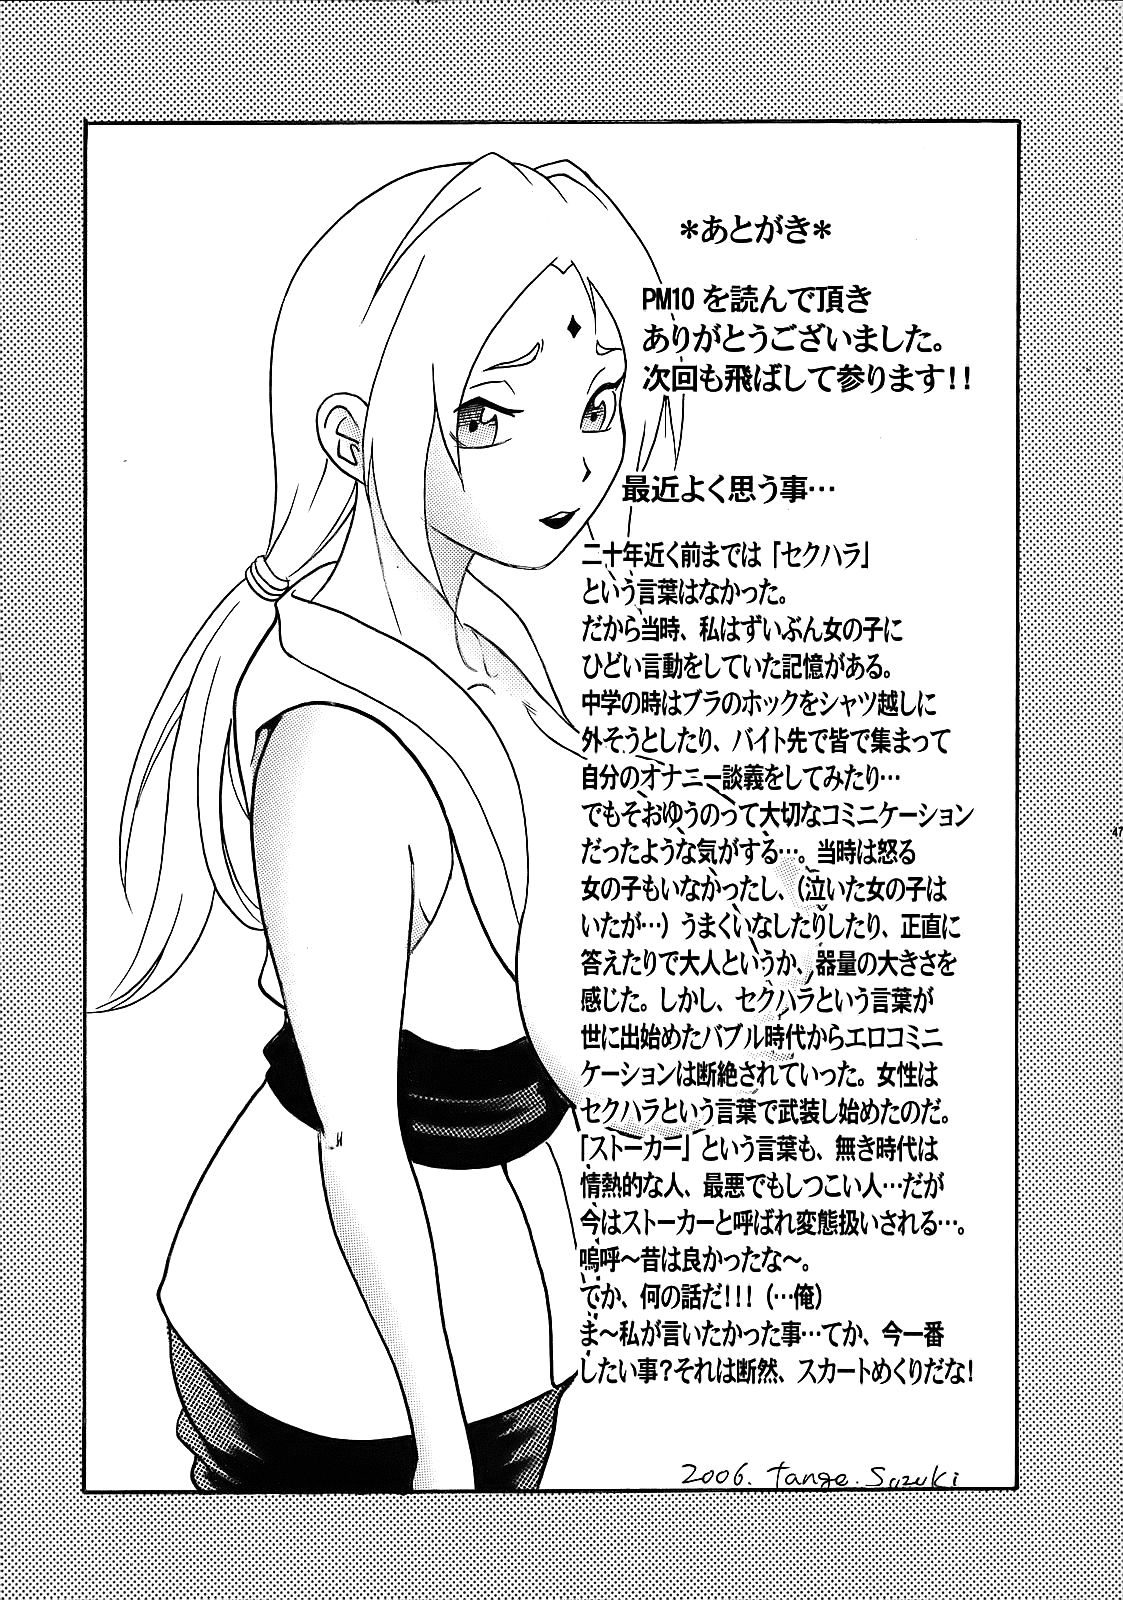 PM 10 - Indecent Ninja Training naruto 45 hentai manga